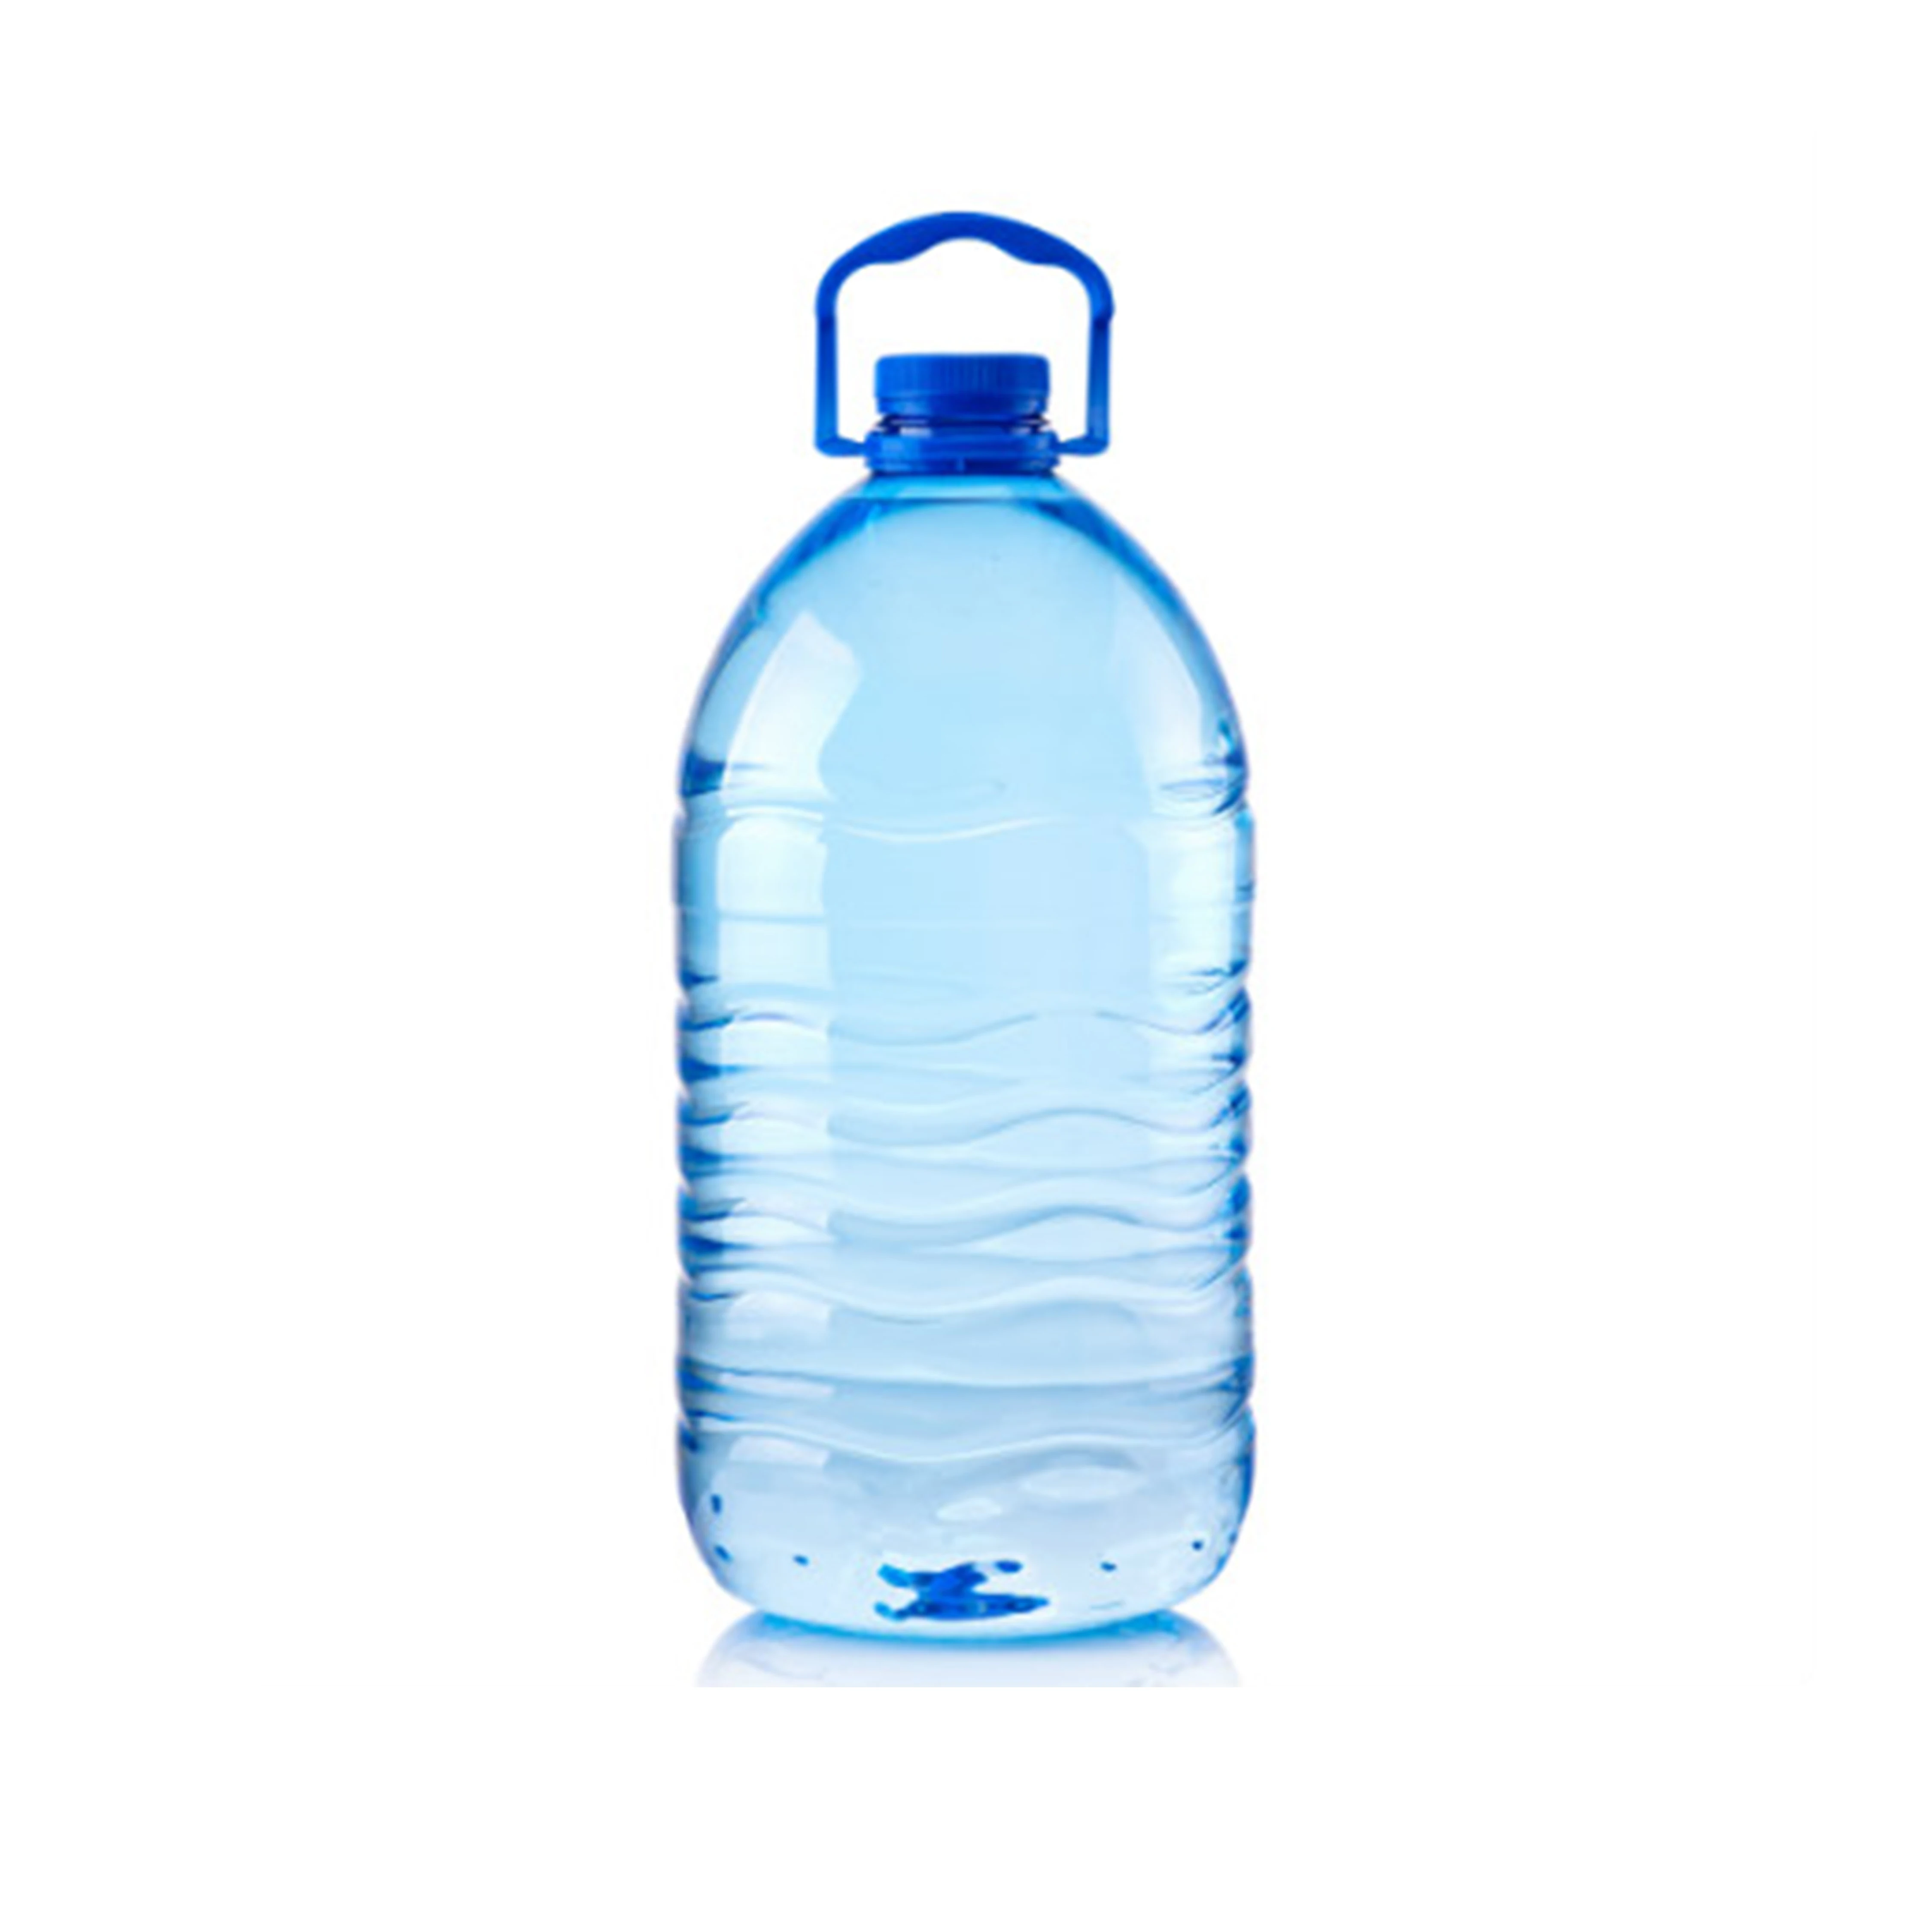 Пэт 5л. ПЭТ-бутылка 5л капелька. 5л Silver Water uz. Бутылка 1л 5л 19л вектор. Бутылка воды 5 л.